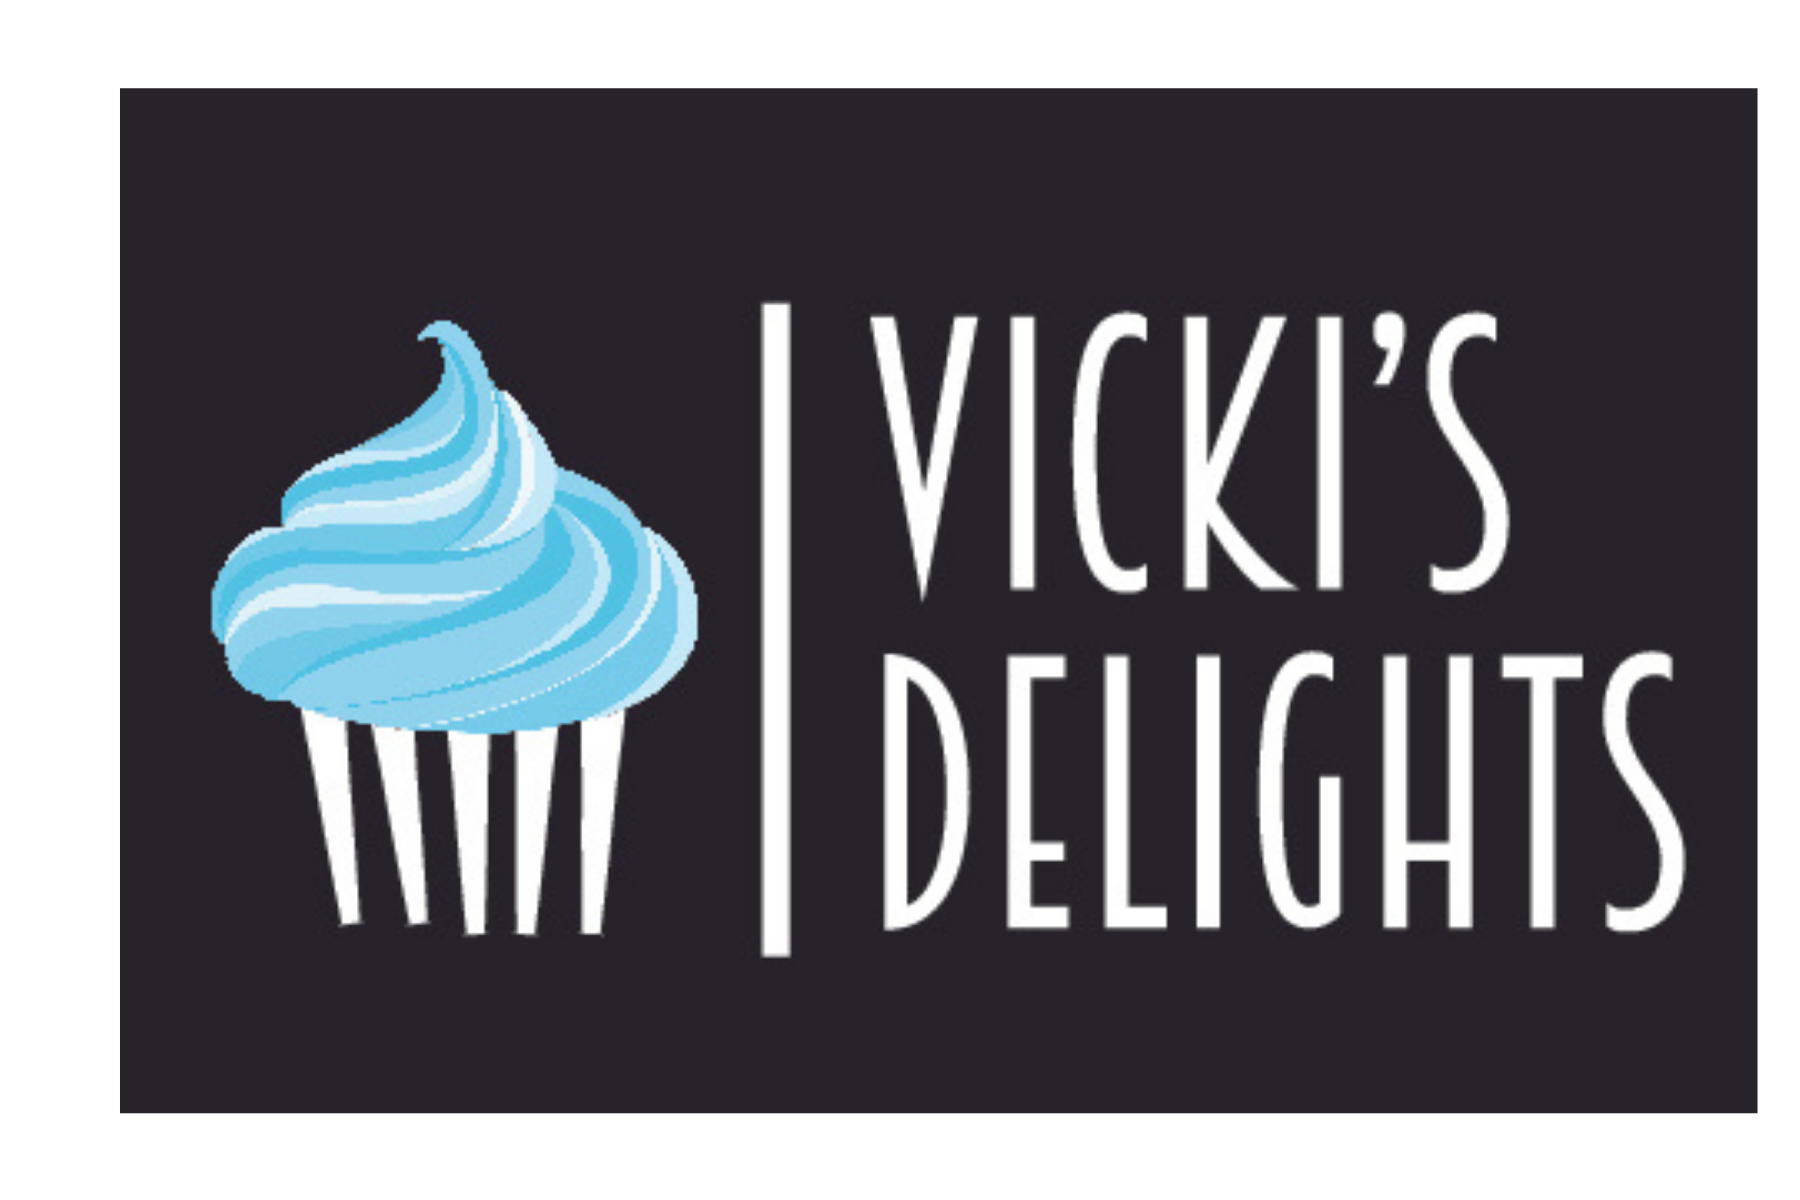 Vicki's Delights